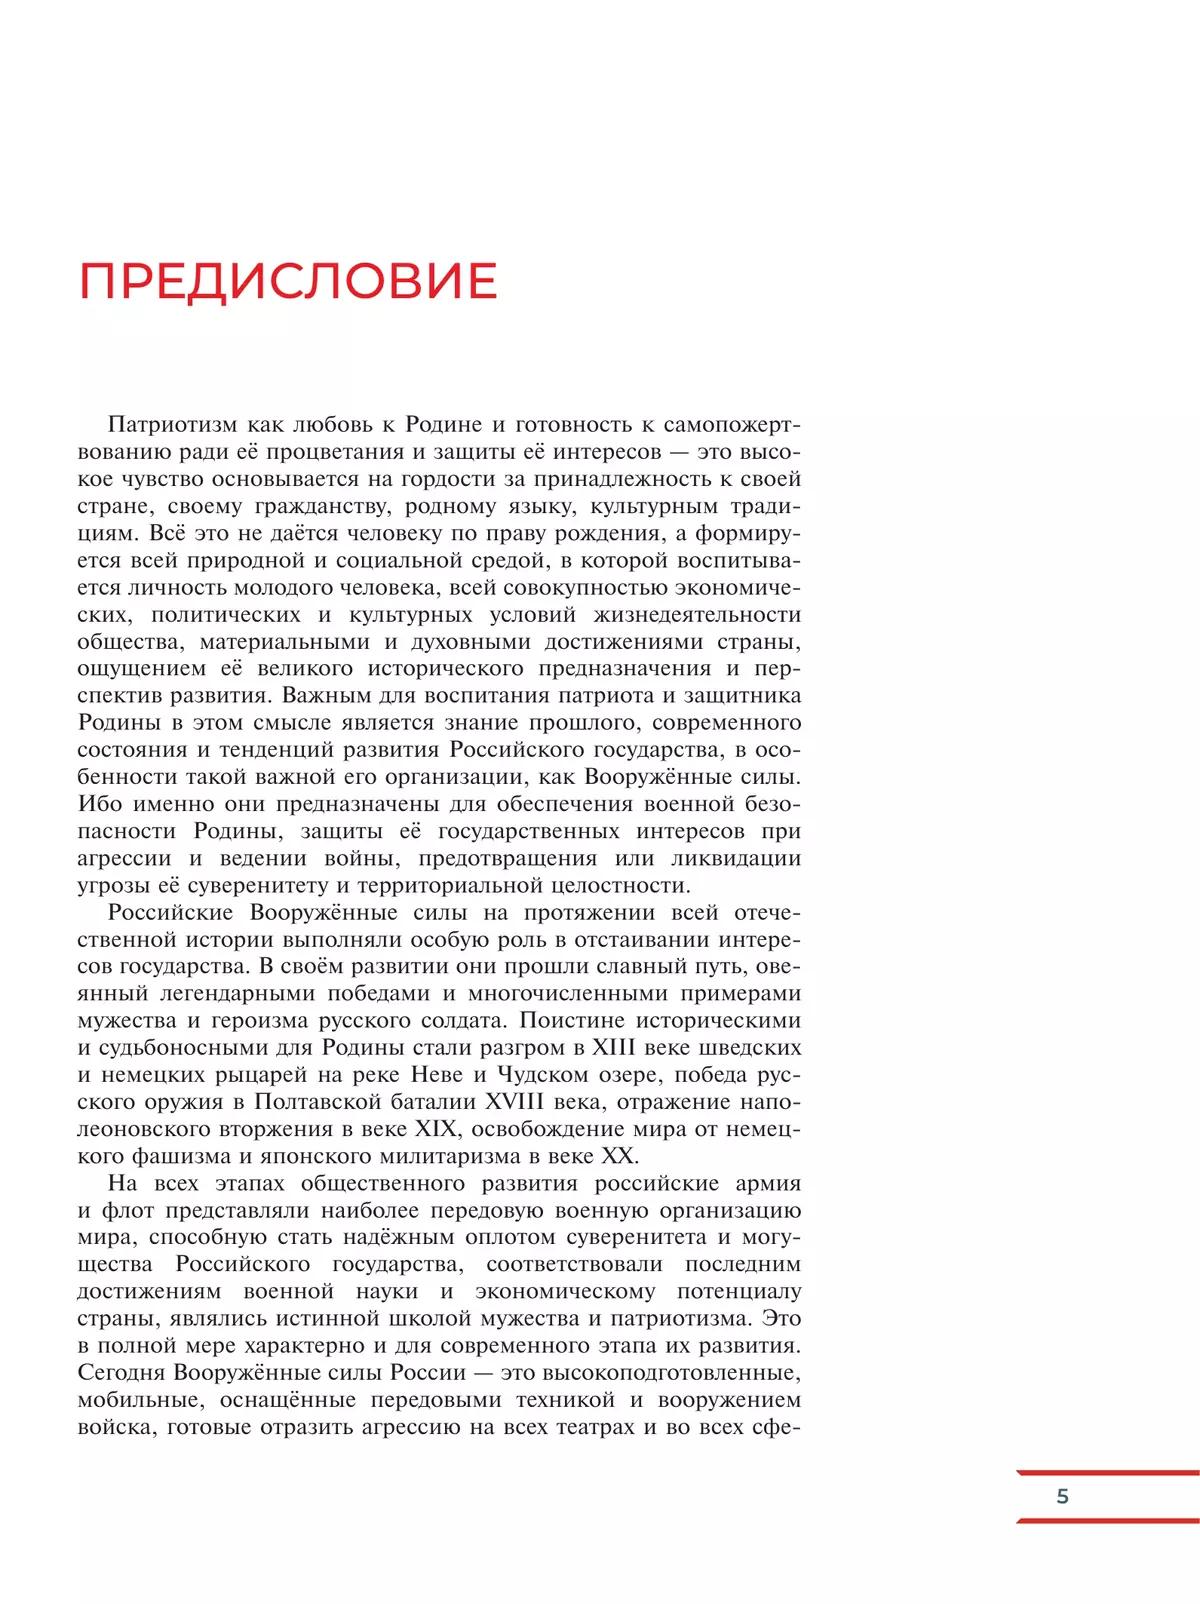 Армия России на защите Отечества. Книга для учащихся 19